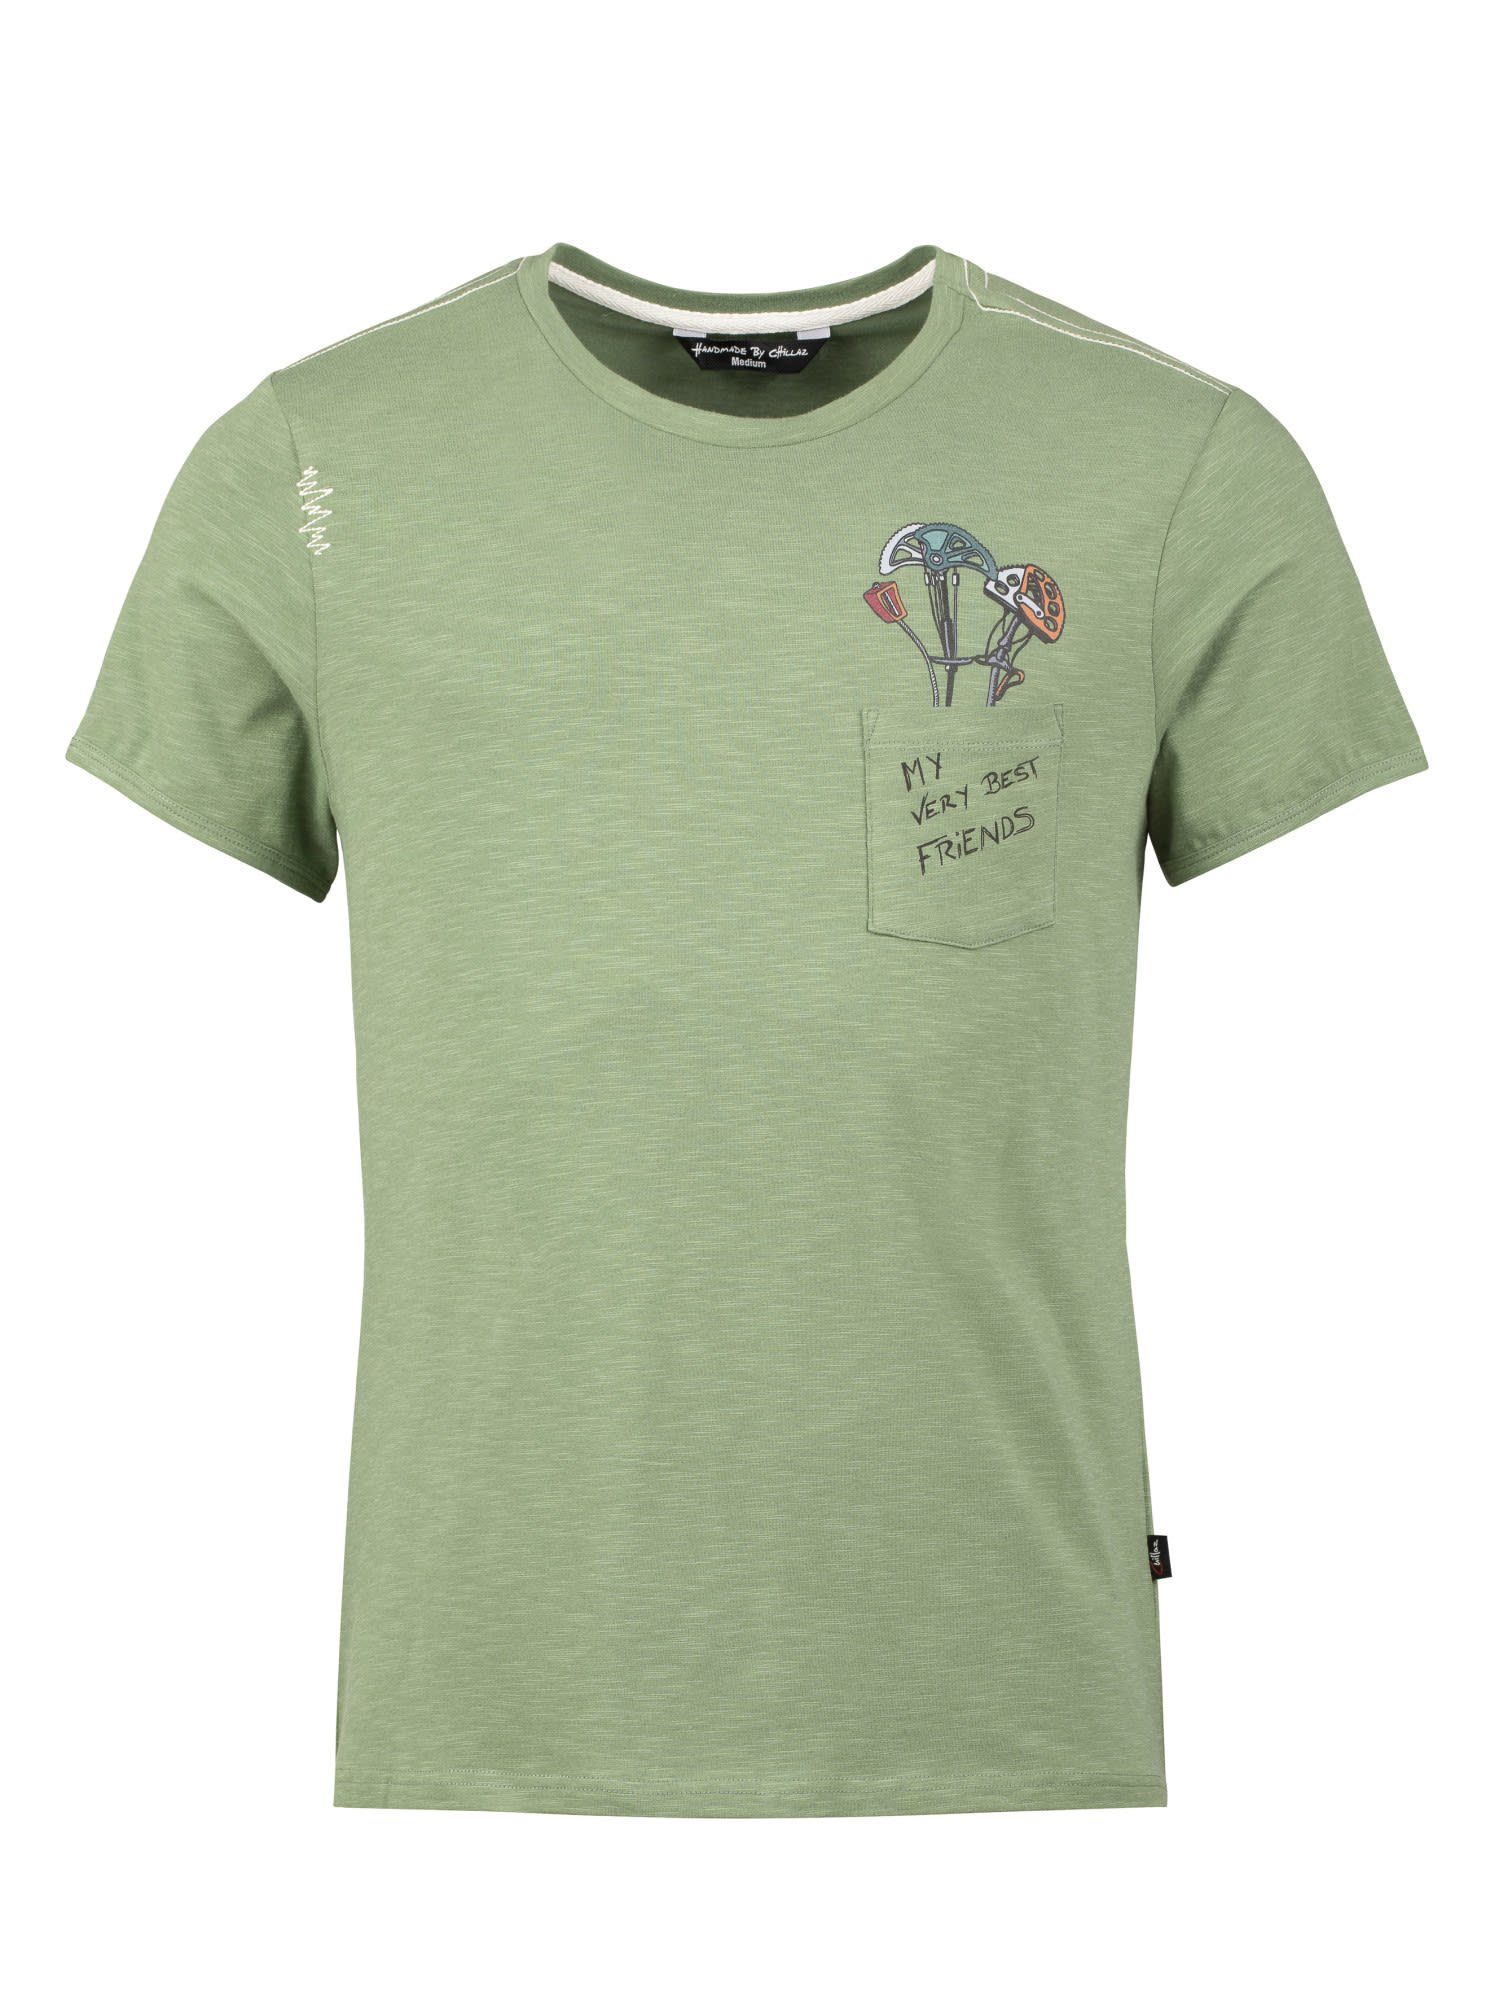 Chillaz T-Shirt Chillaz M Pocket Friends T-shirt Herren Light Green